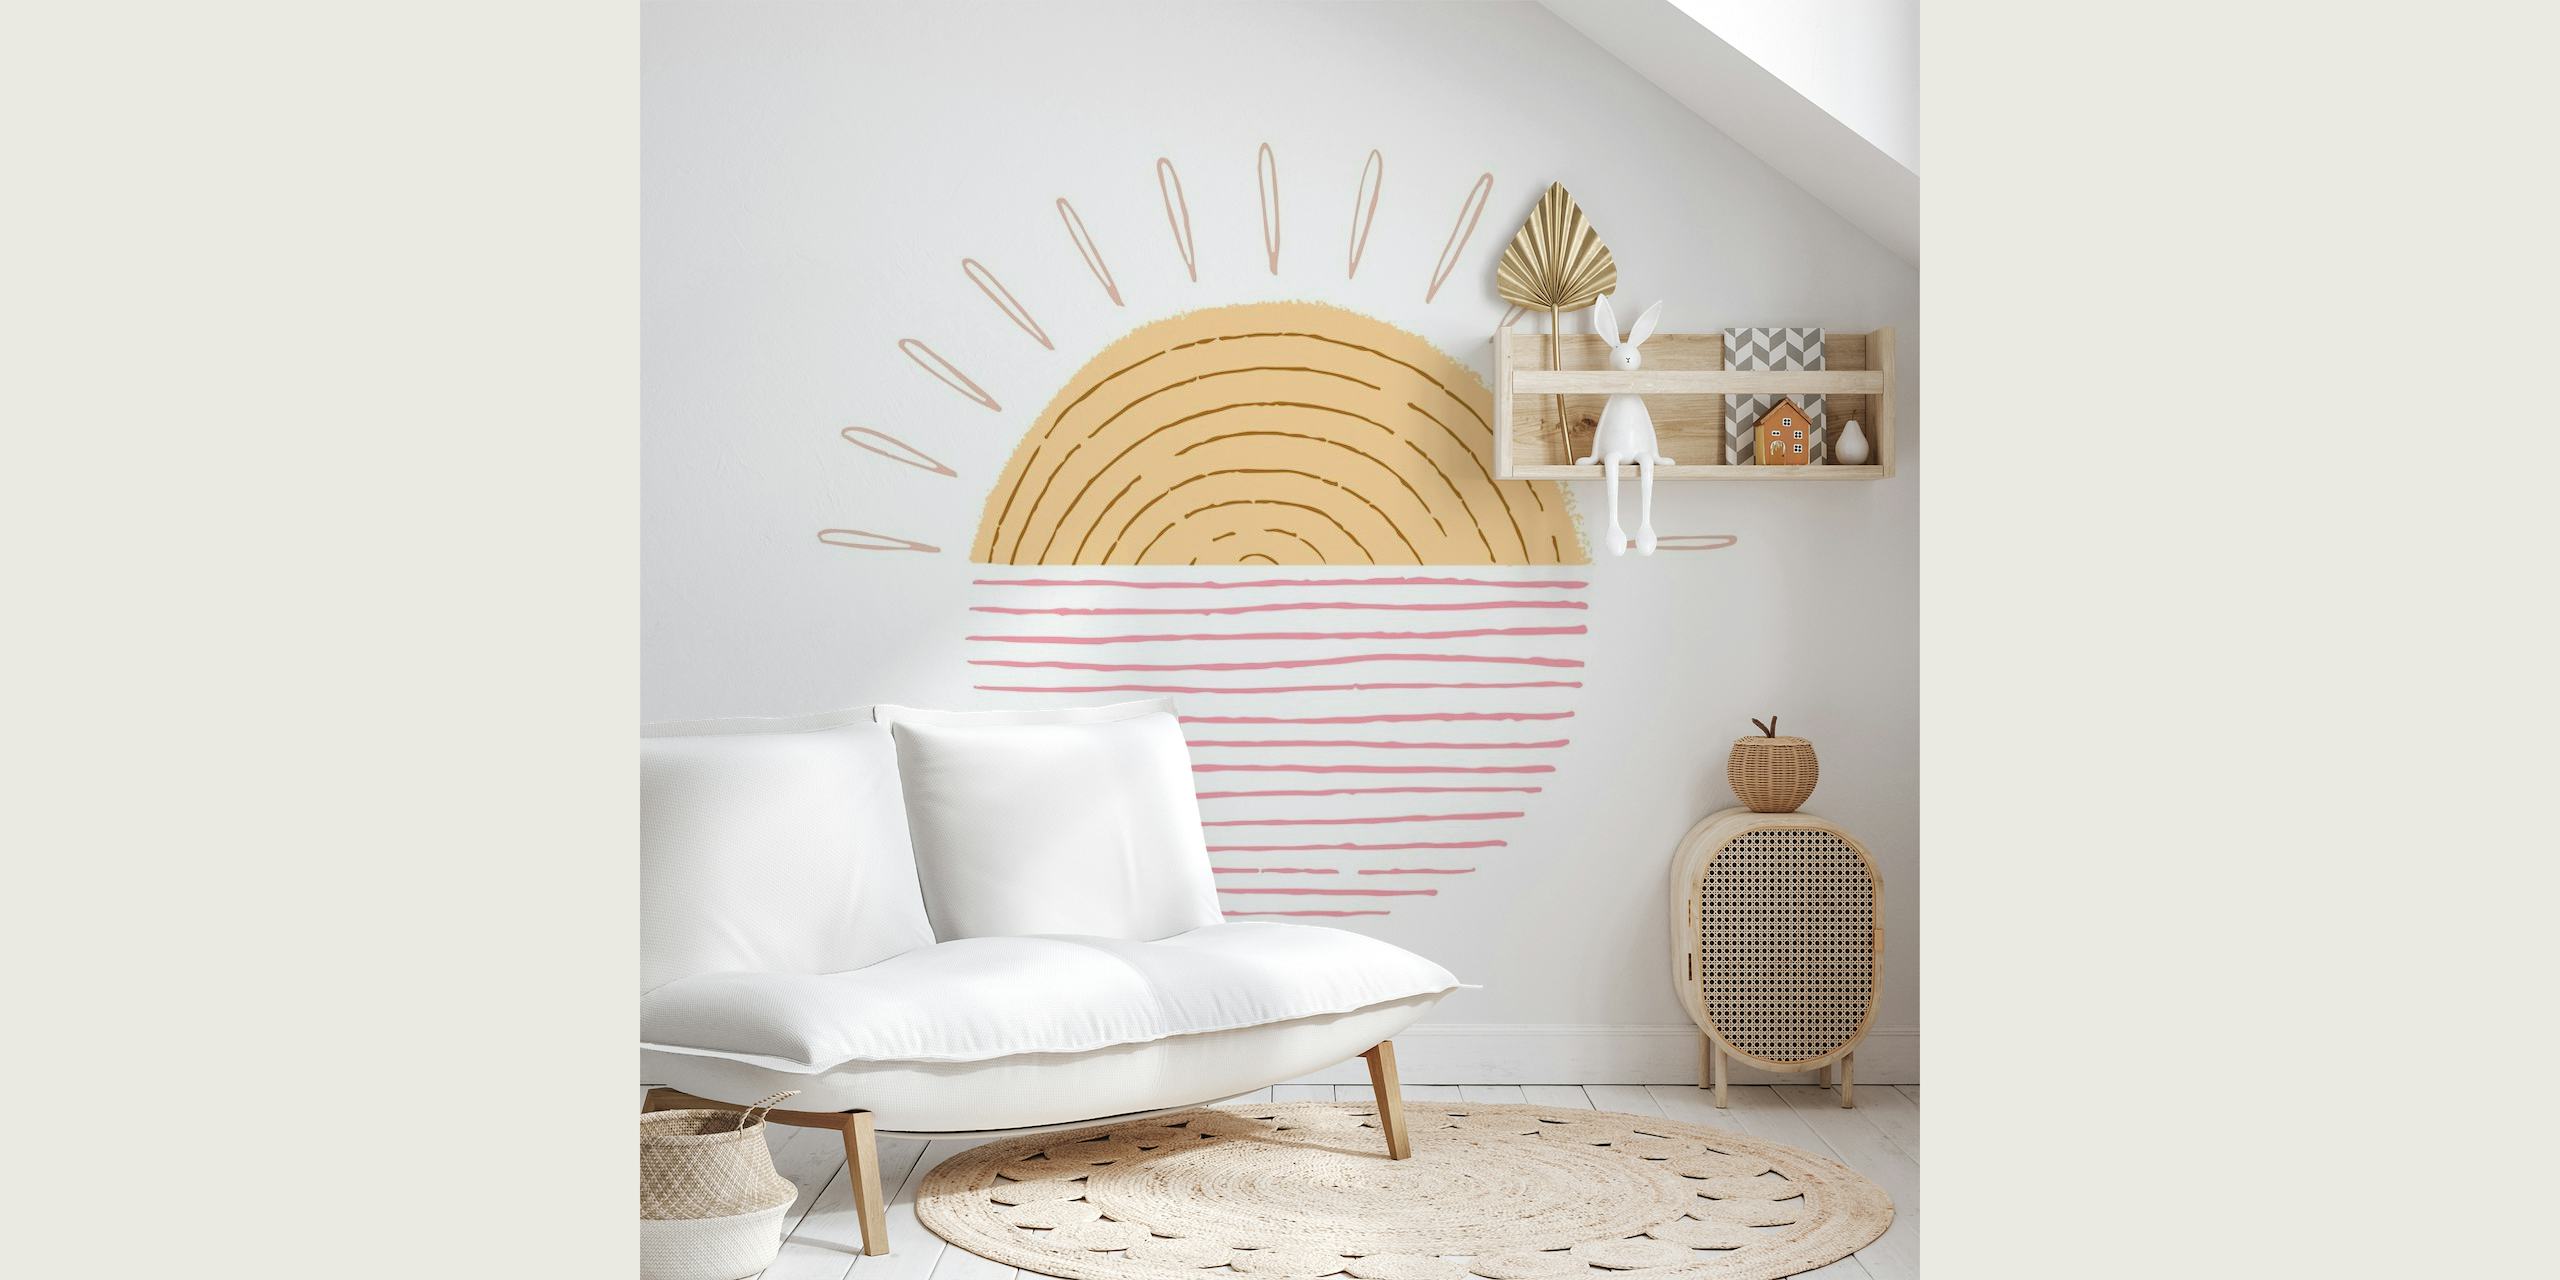 Illustratieve Sweet Sunrise muurschildering met warme tinten en minimalistisch design